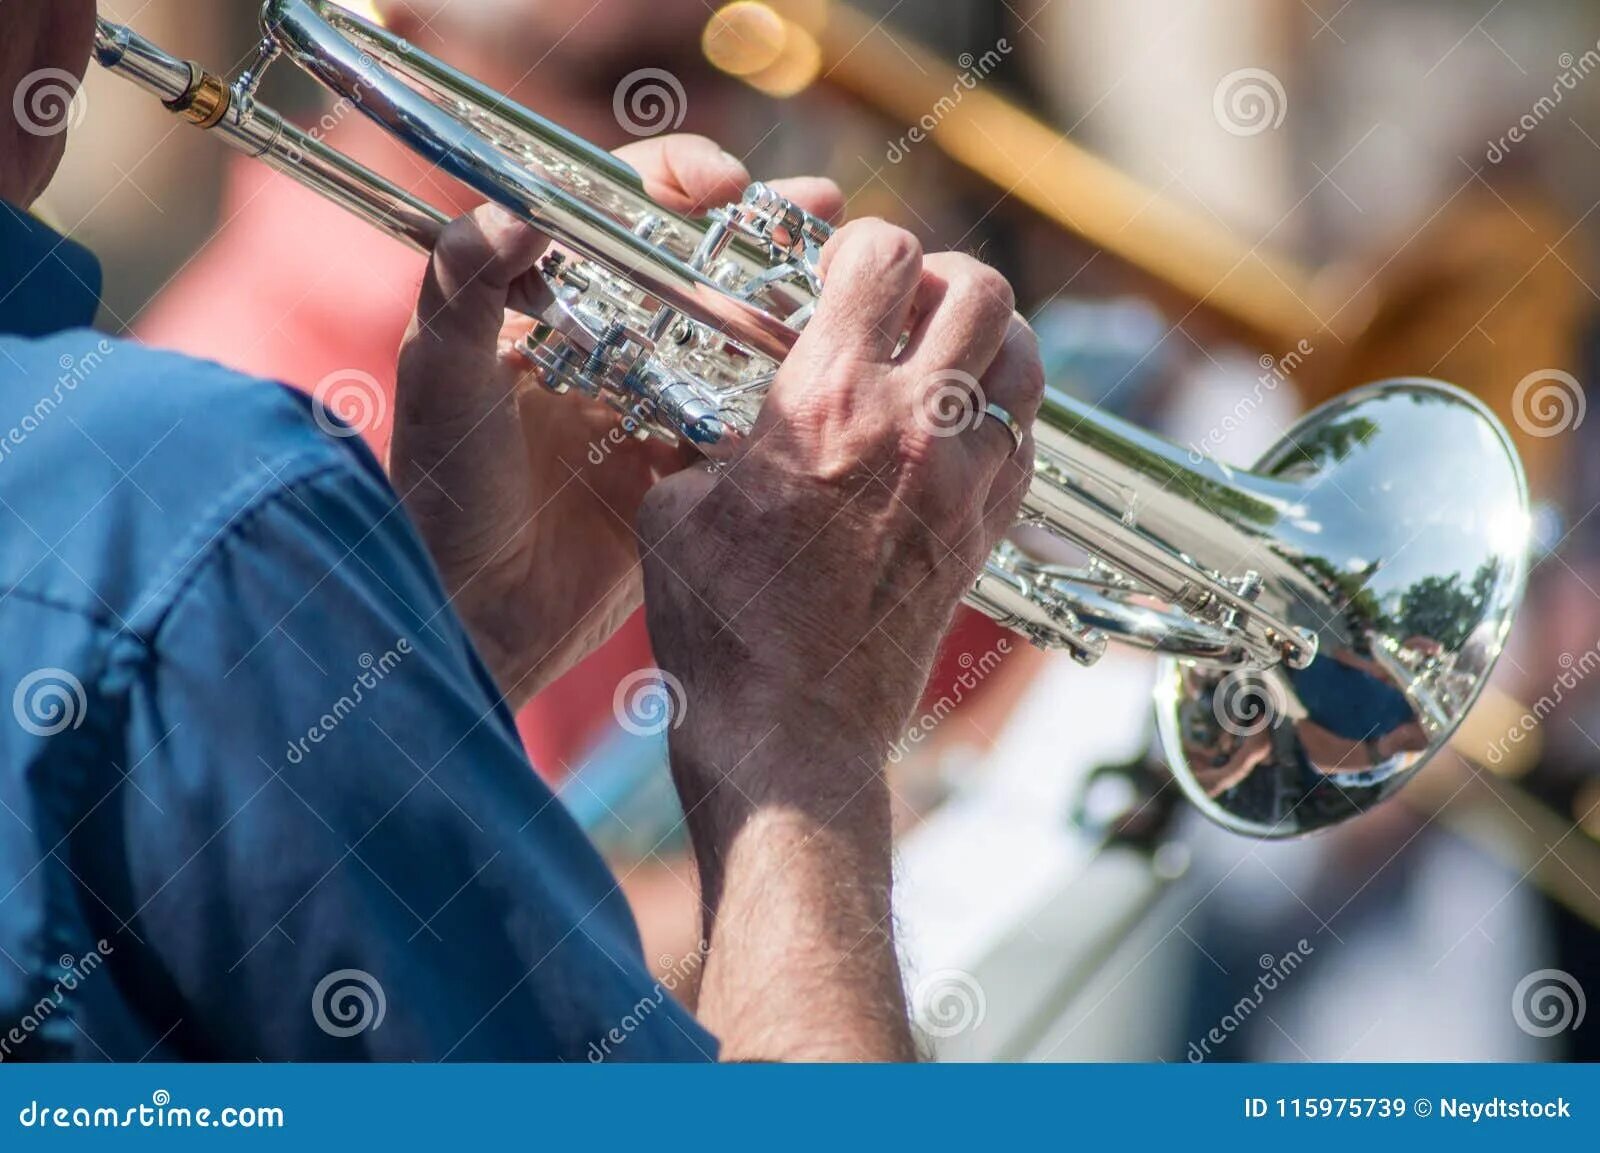 Музыка играет труба. Человек играет на трубе. Джазовая труба и море. Мужчина играющий на трубе фото. Мужик играет на трубе СПБ.